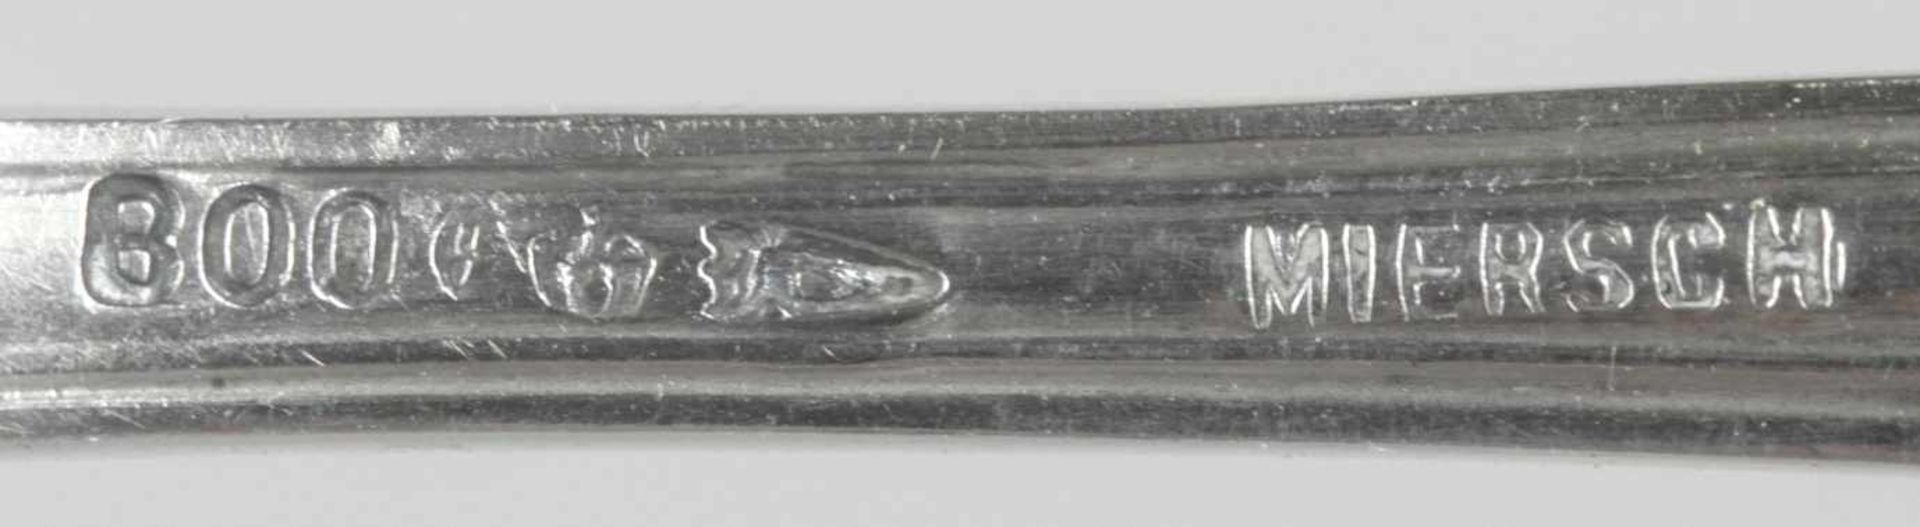 Zwölf Austernlöffel, dt., um 1910, Silber 800, Griffe mit Linear-Randdekor, zus. ca. 310gr. - Bild 2 aus 2